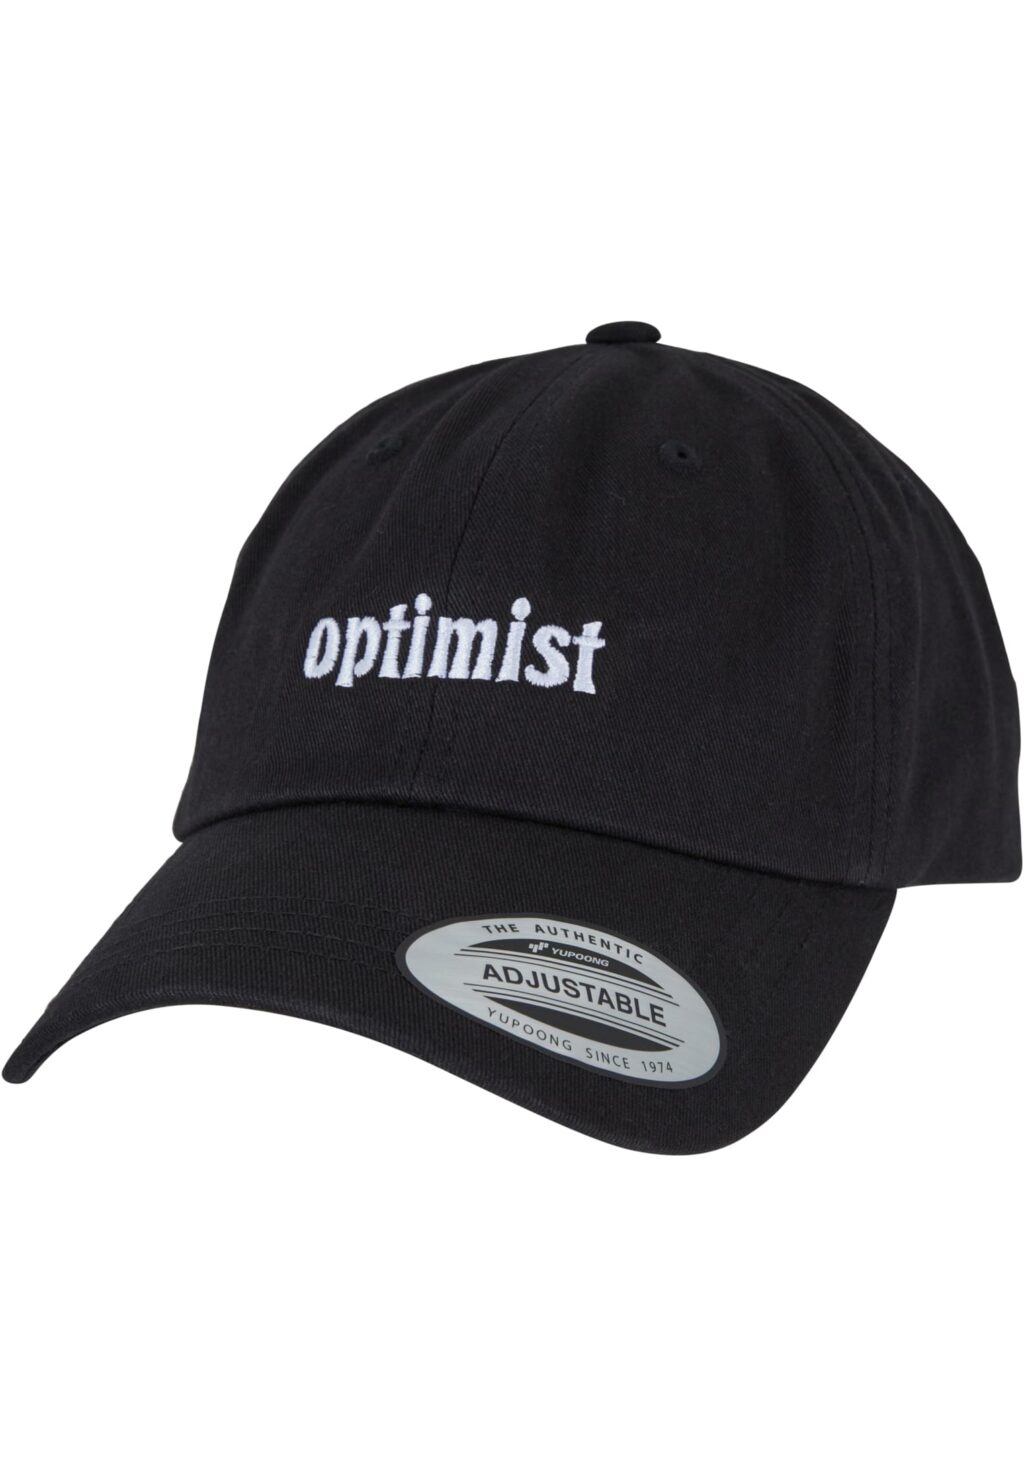 Optimist Cap black one BE068